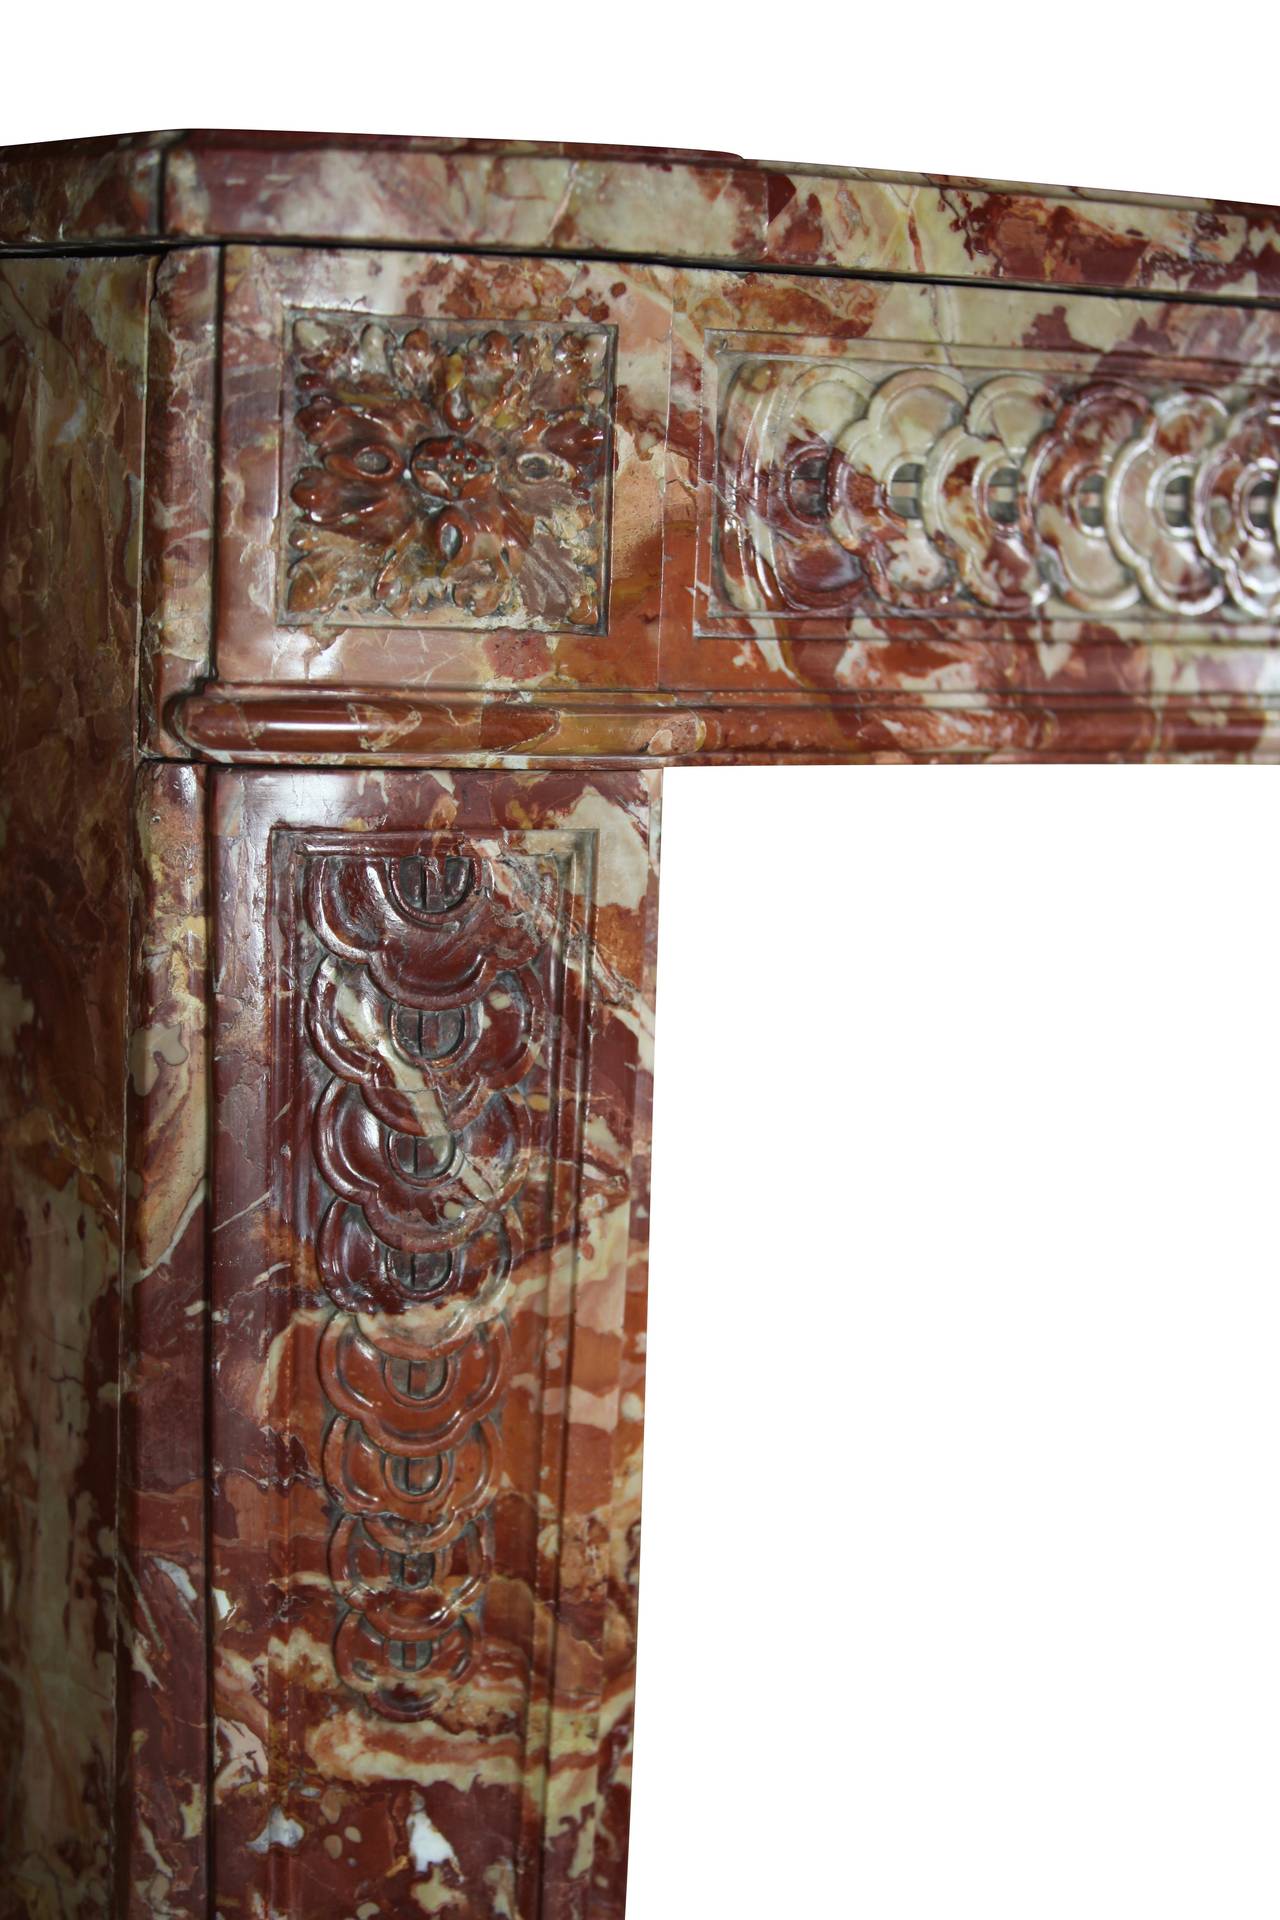 Die tiefe Farbe des Marmors spiegelt den Reichtum und die Macht des ursprünglichen Besitzers wider. Diese originale antike Kamineinfassung stammt aus der Zeit Louis XVI. Dies ist ein sehr einzigartiges und beeindruckendes Werk. Ein großartiges Stück